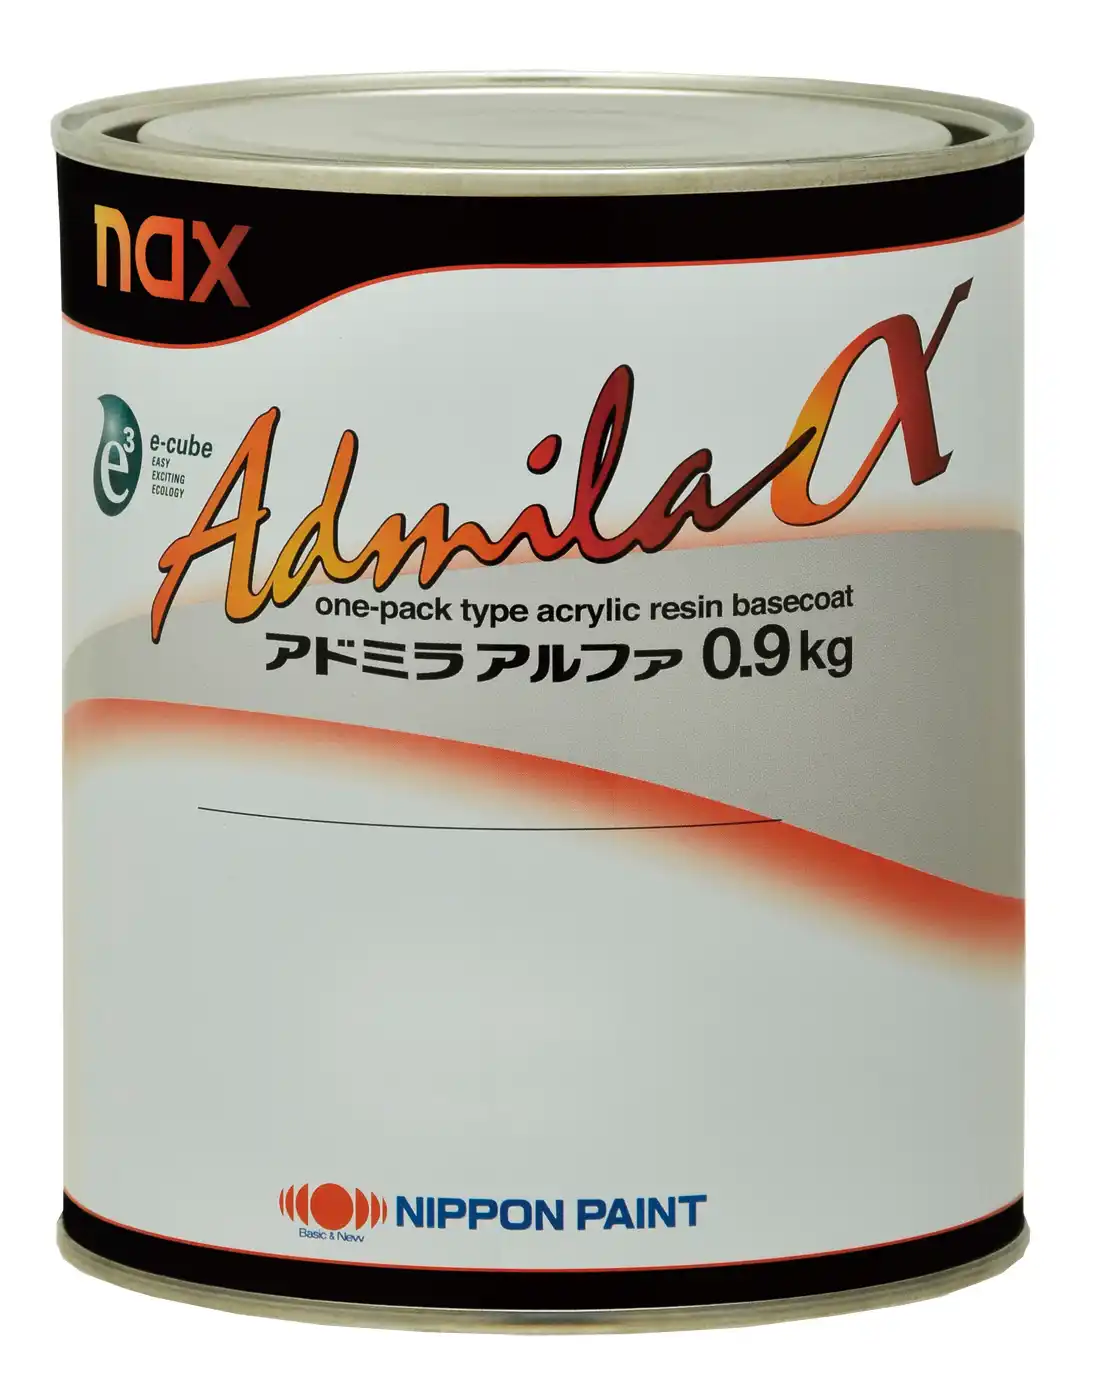 日本ペイント nax アドミラアルファ 原色 カラーメタリックベース